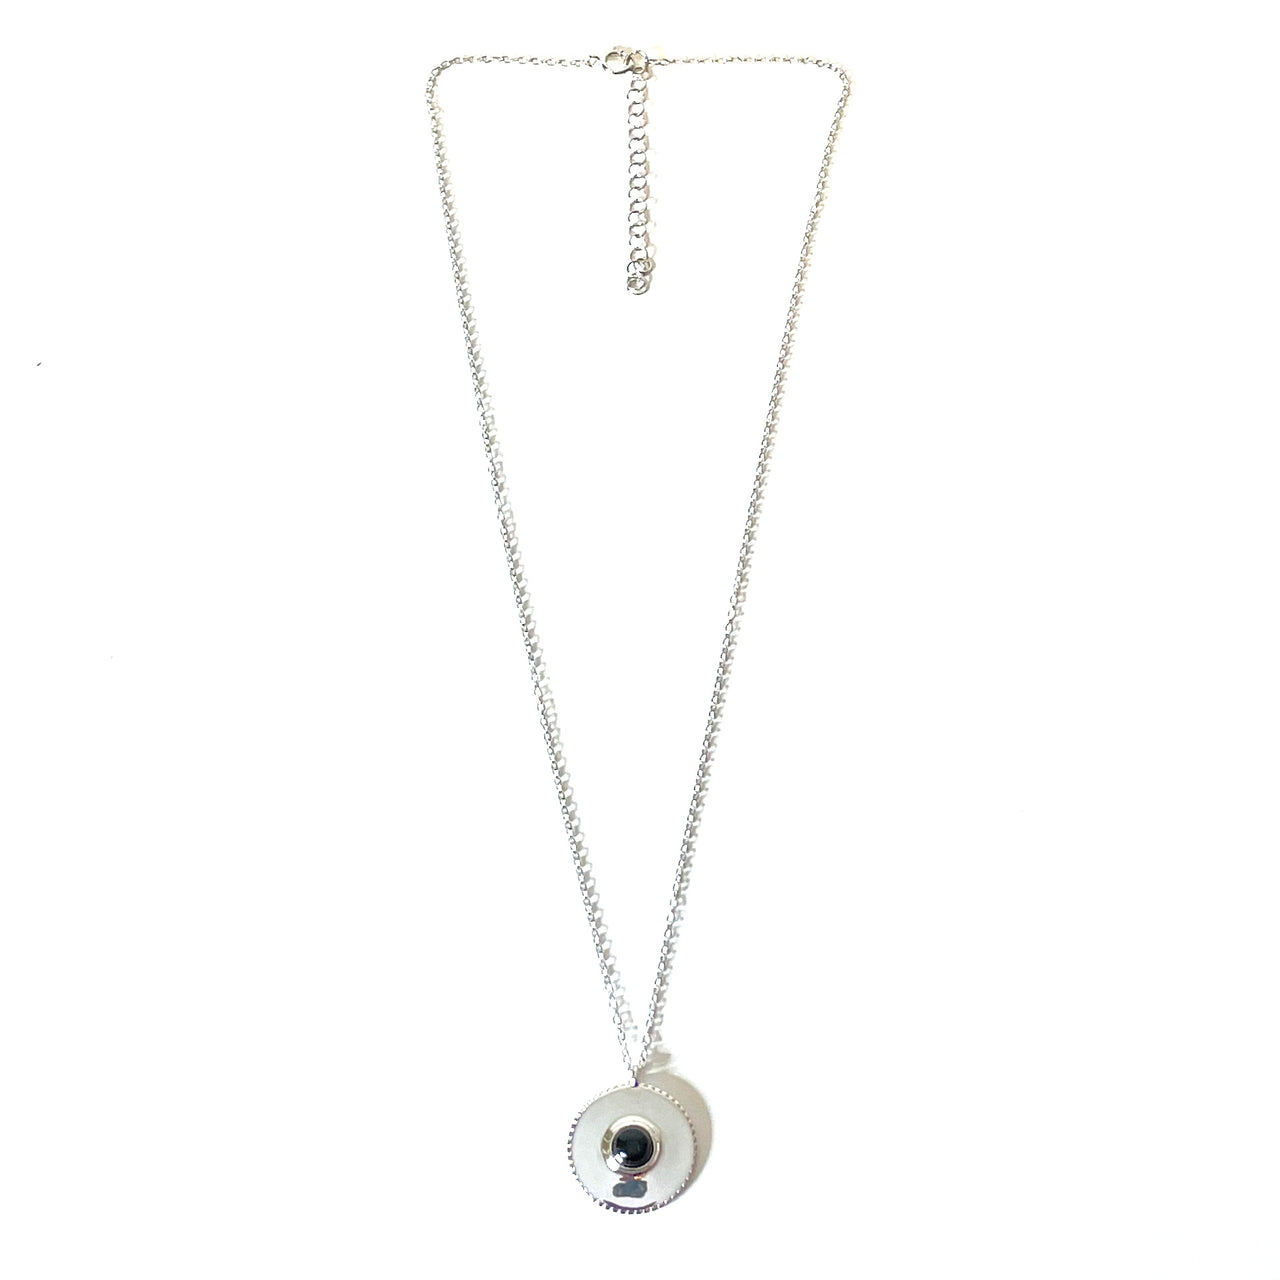 Collar extensible de plata de ley, un espectacular medallón de plata 925 con mineral. Este collar es una pieza ideal para tus looks favoritos